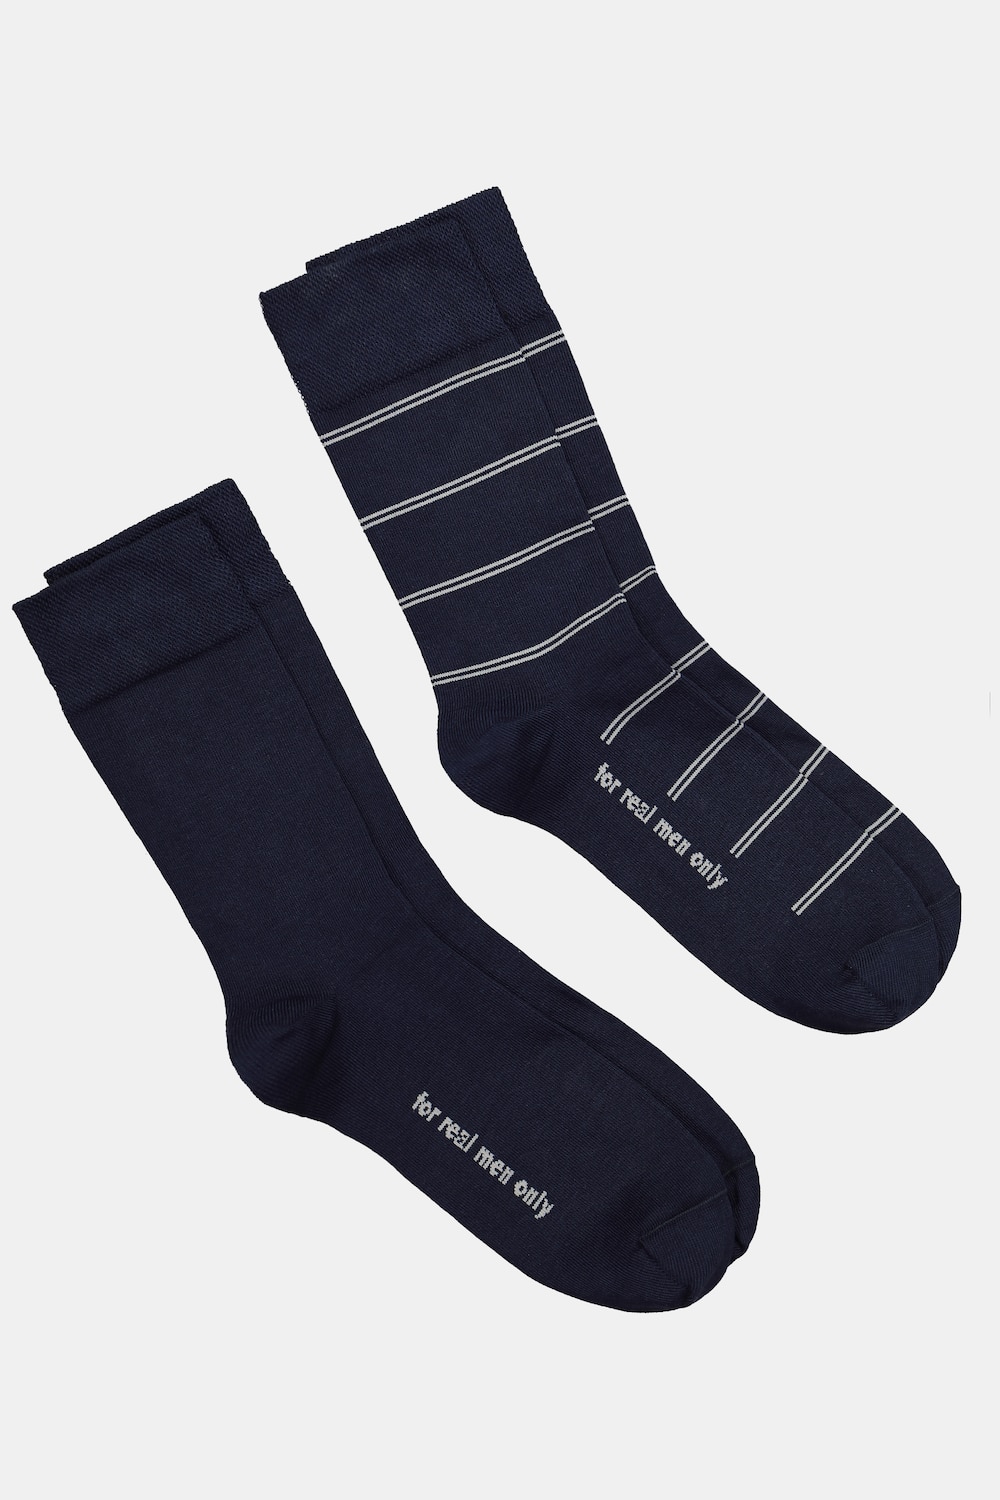 Große Größen JP1880 Socken, Herren, blau, Größe: 51-53, Baumwolle/Synthetische Fasern, JP1880 von JP1880